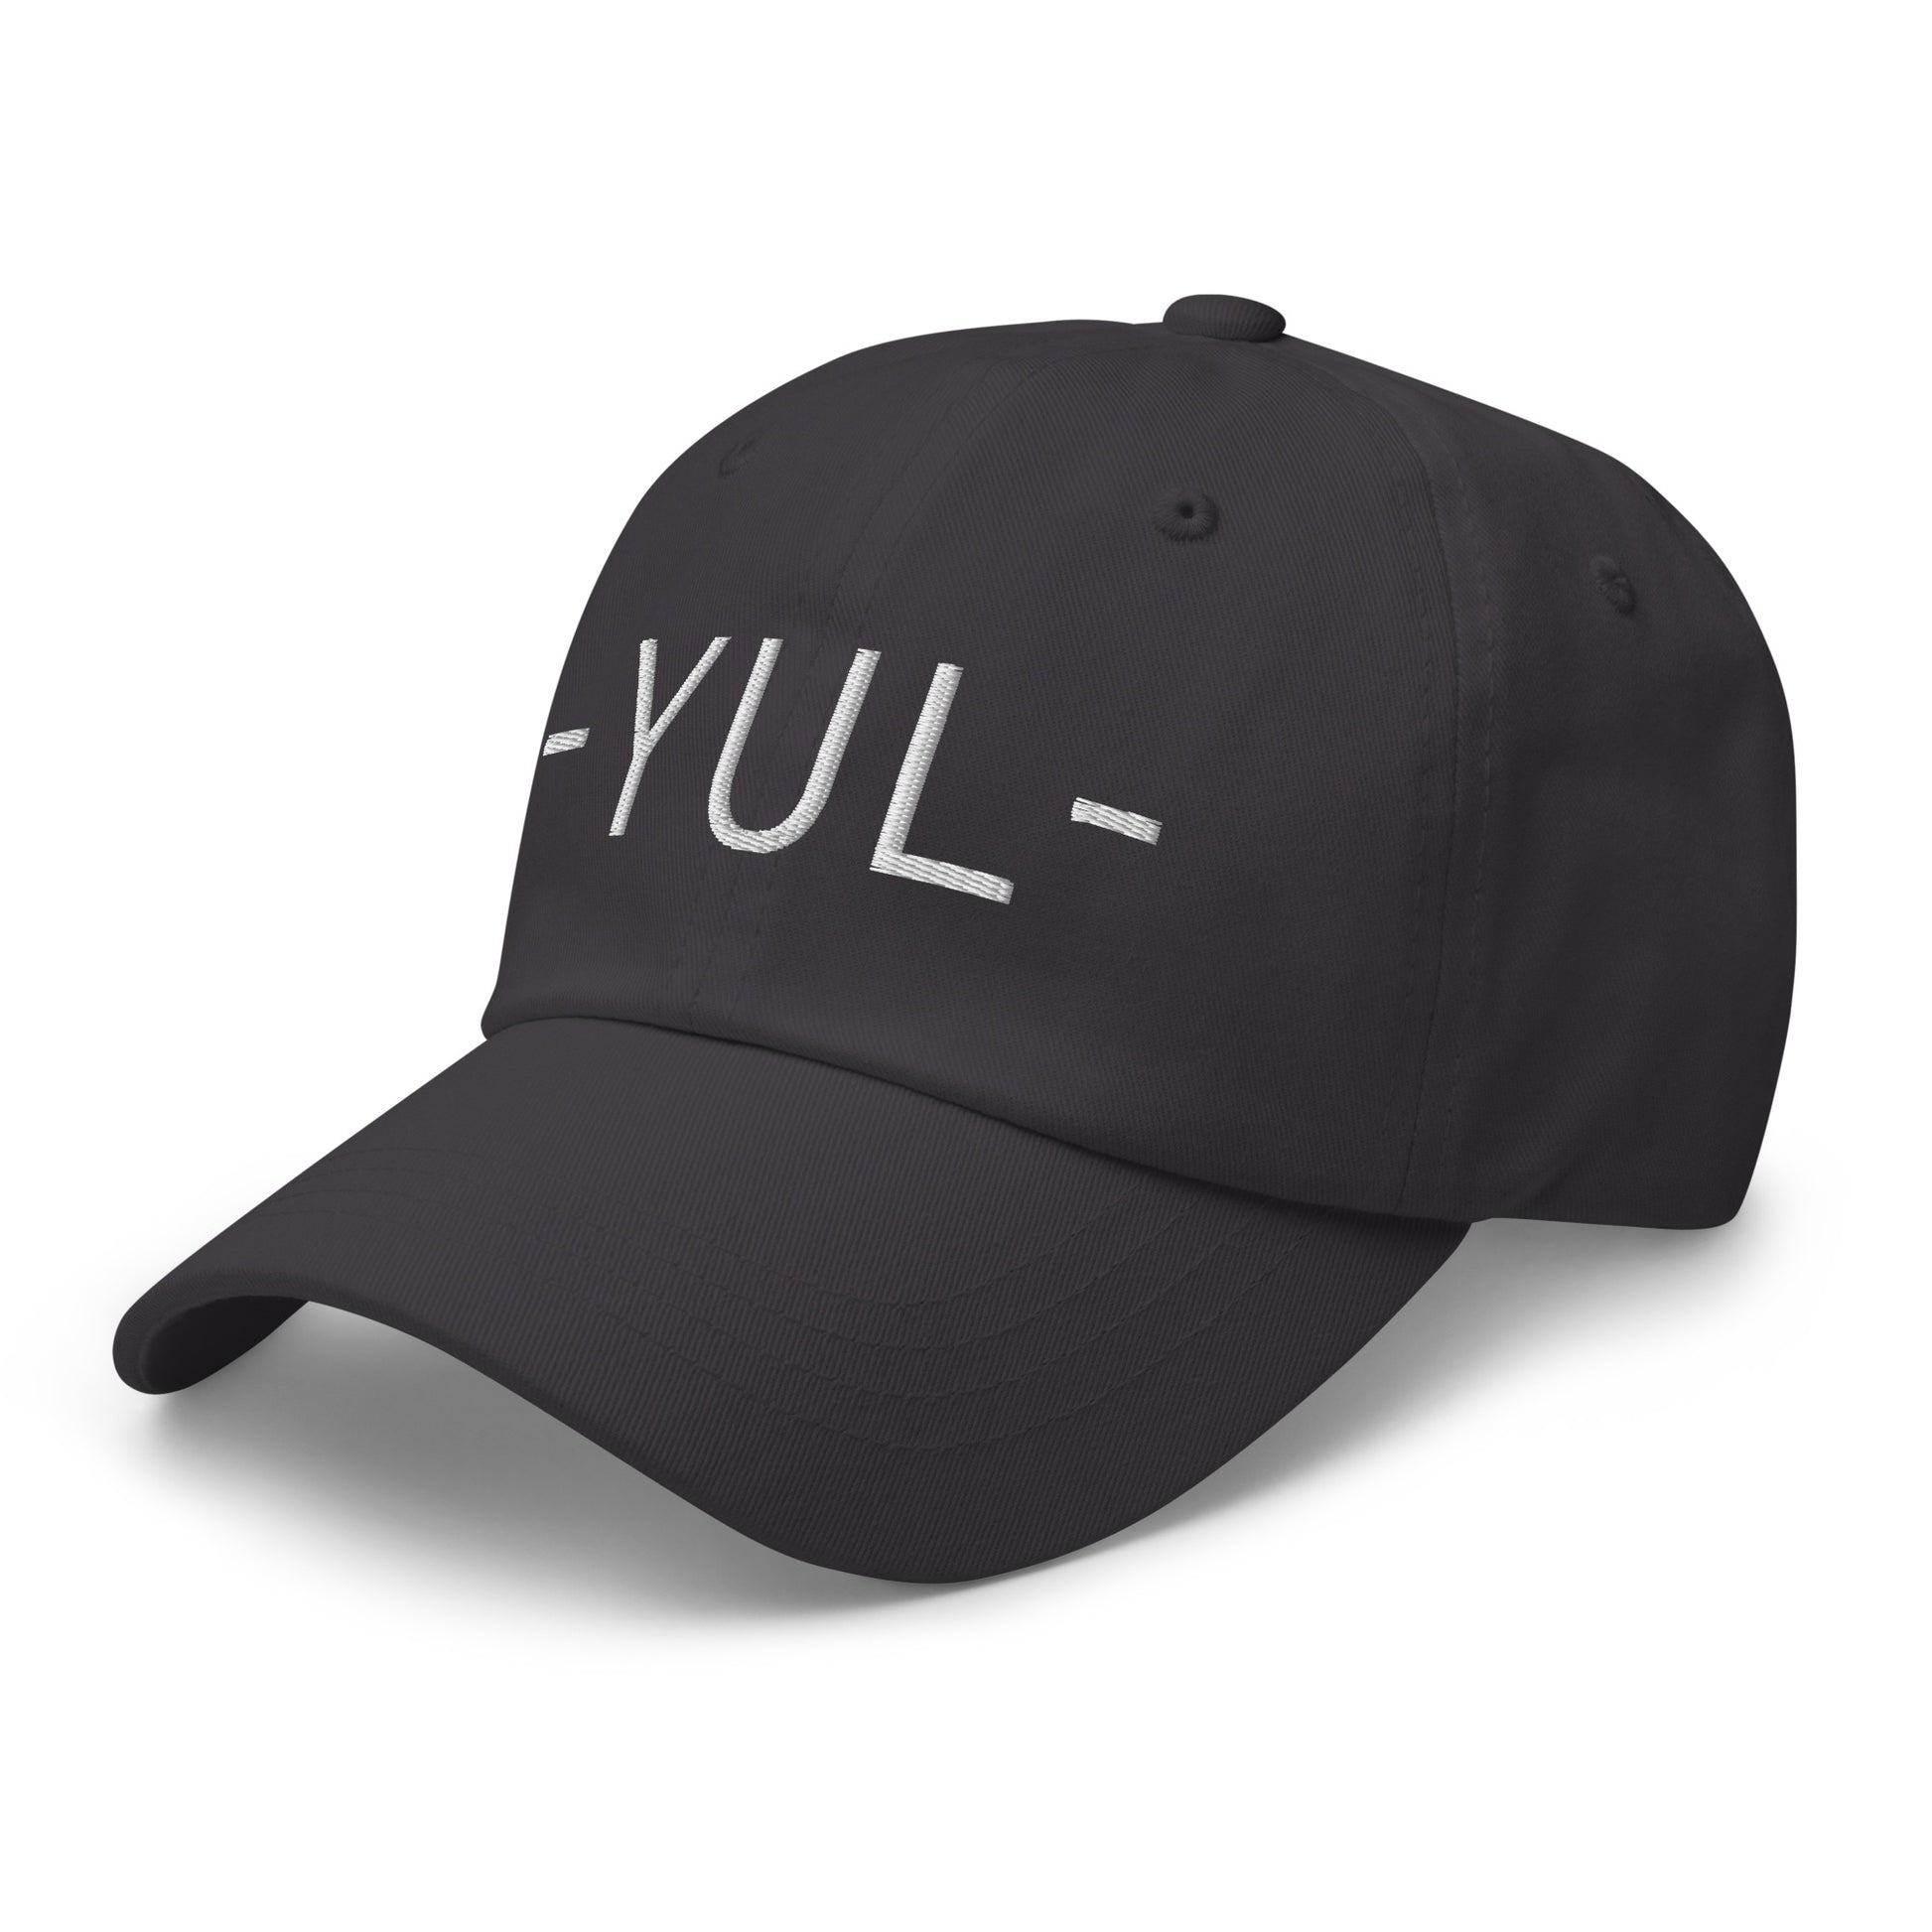 Souvenir Baseball Cap - White • YUL Montreal • YHM Designs - Image 20